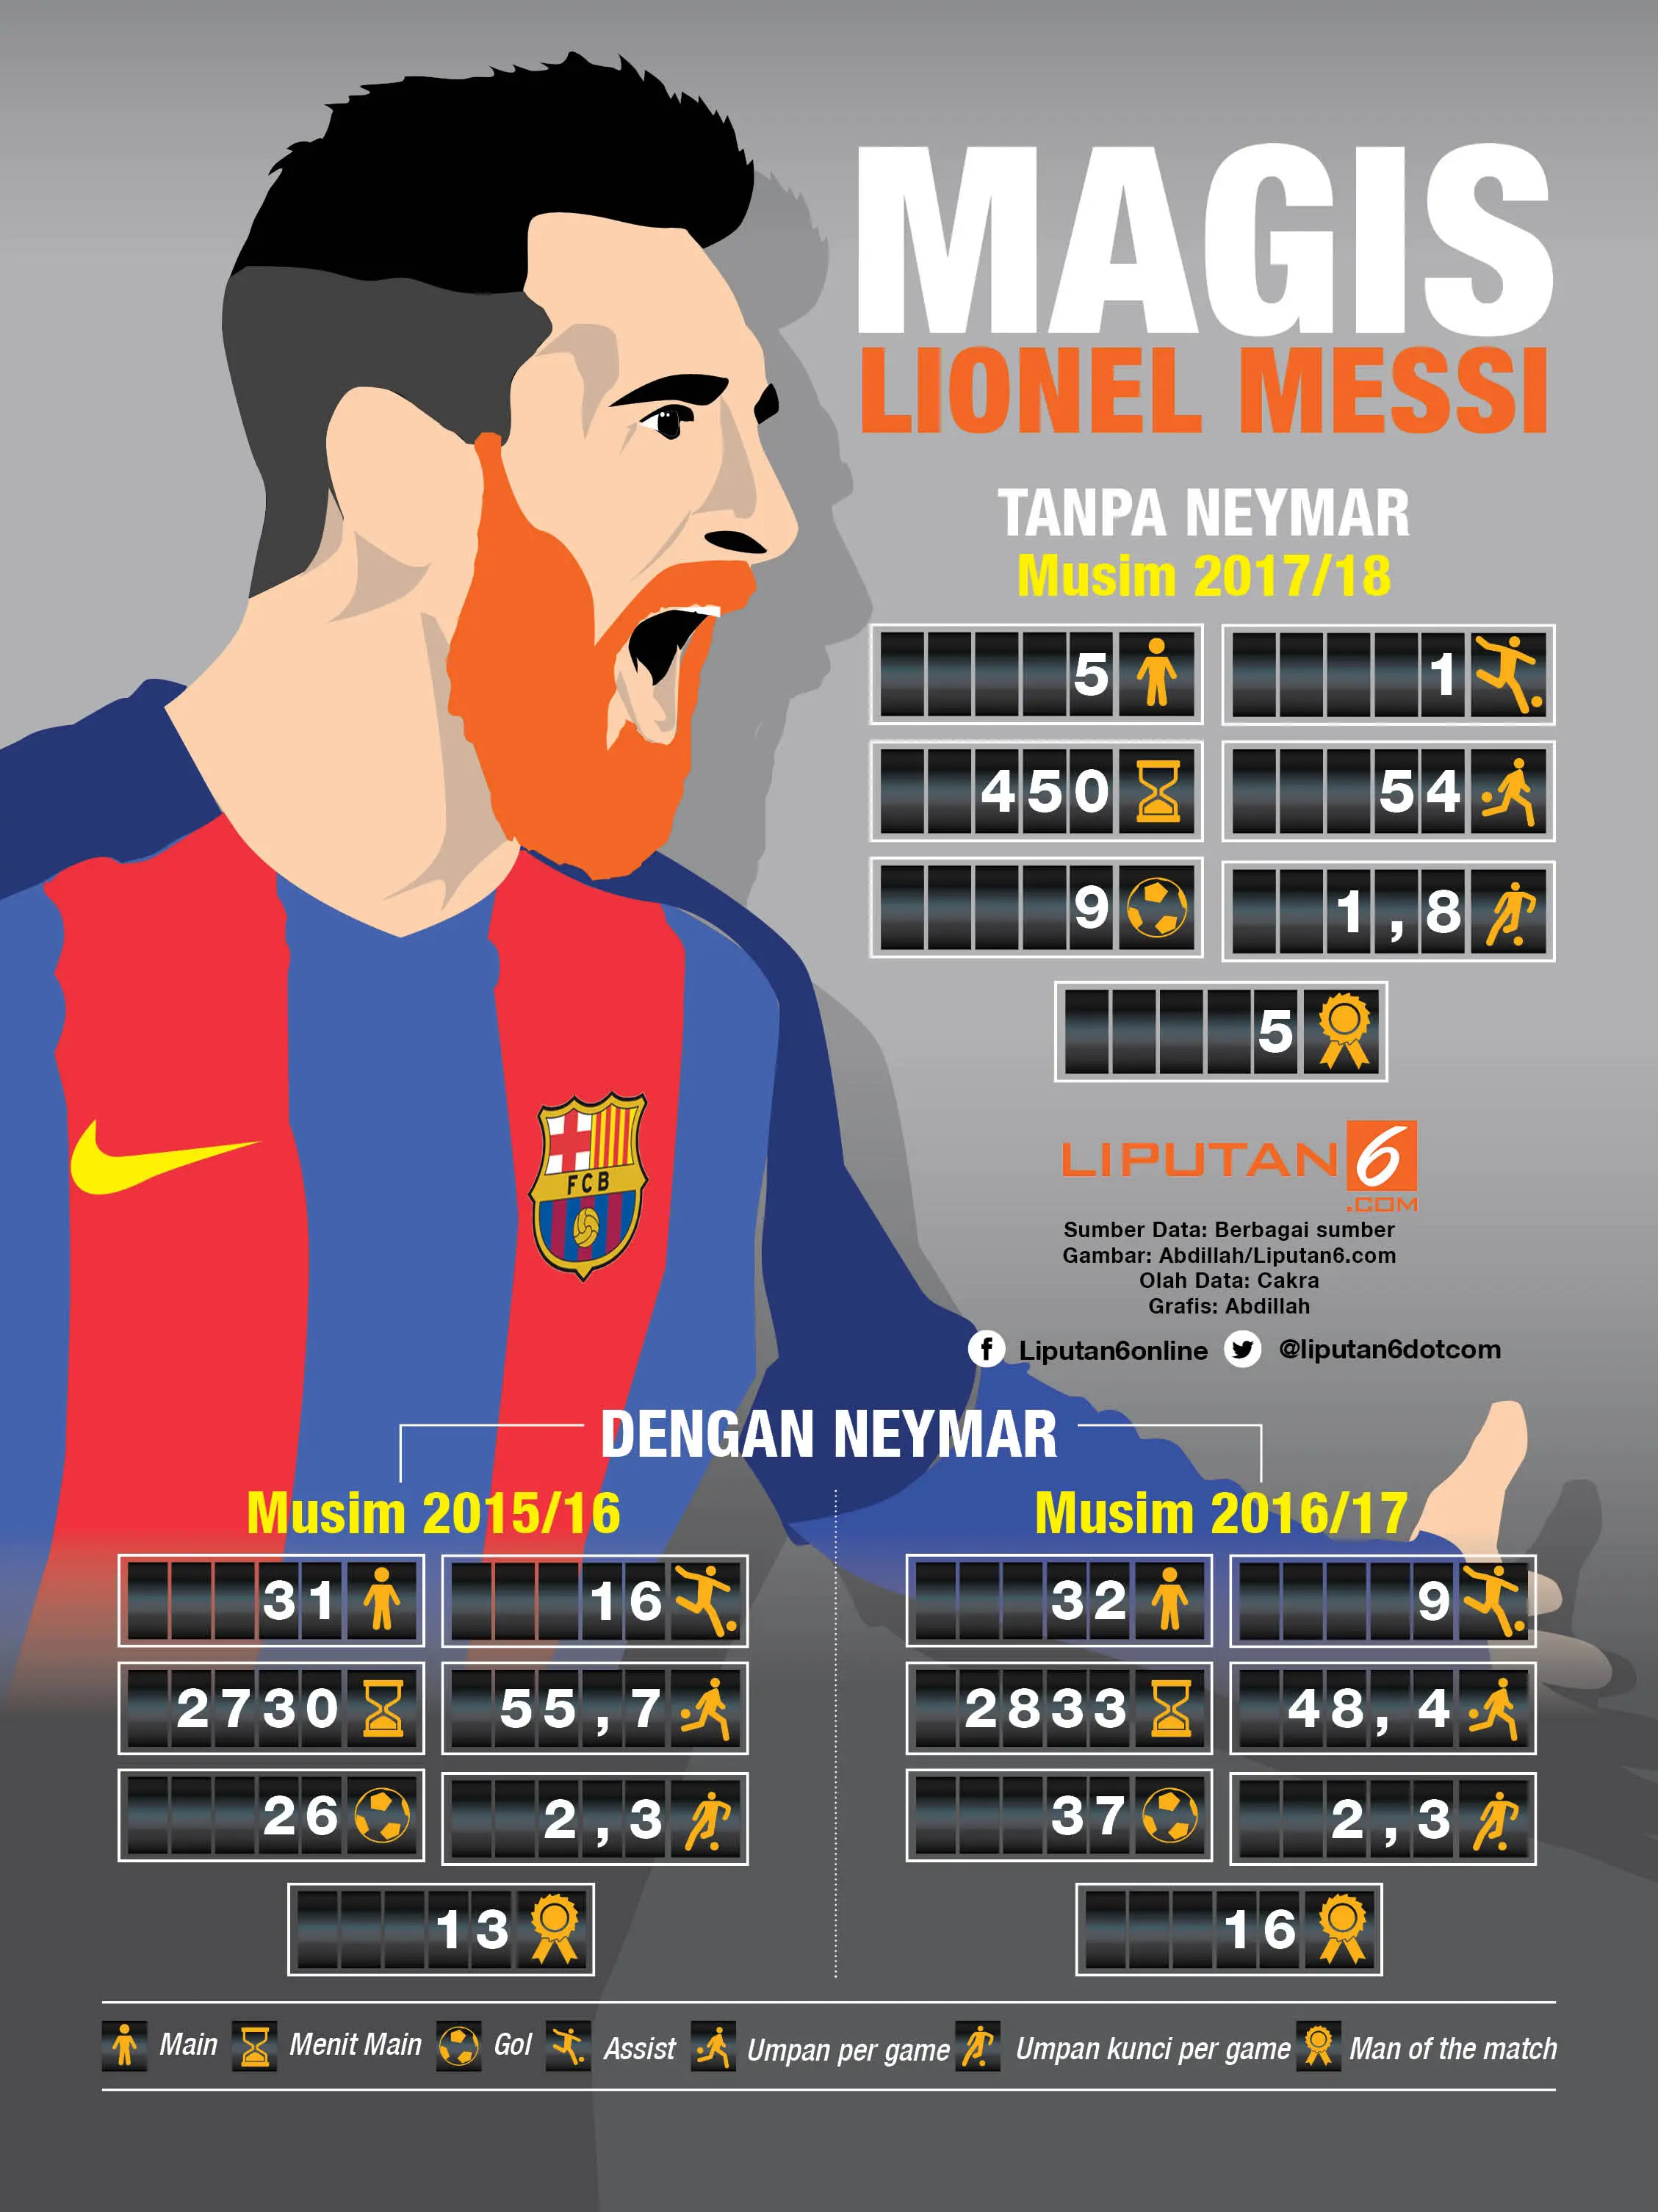 Magis Lionel Messi di awal 2017/2018. (Liputan6.com/Abdillah)